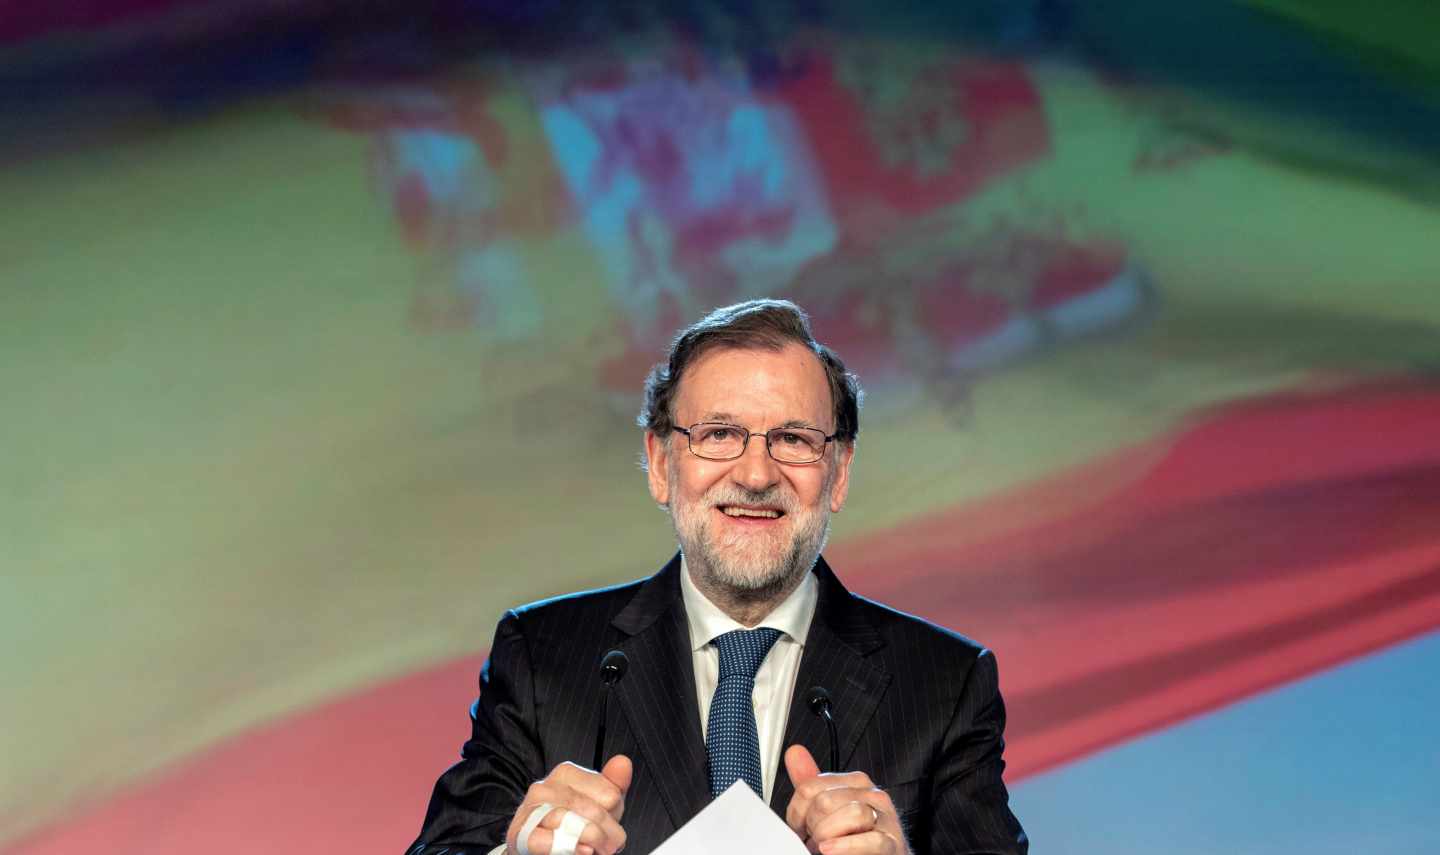 El Gobierno gastó más de 1.000 millones de euros al mes para las clases de inglés de Rajoy y altos cargos.